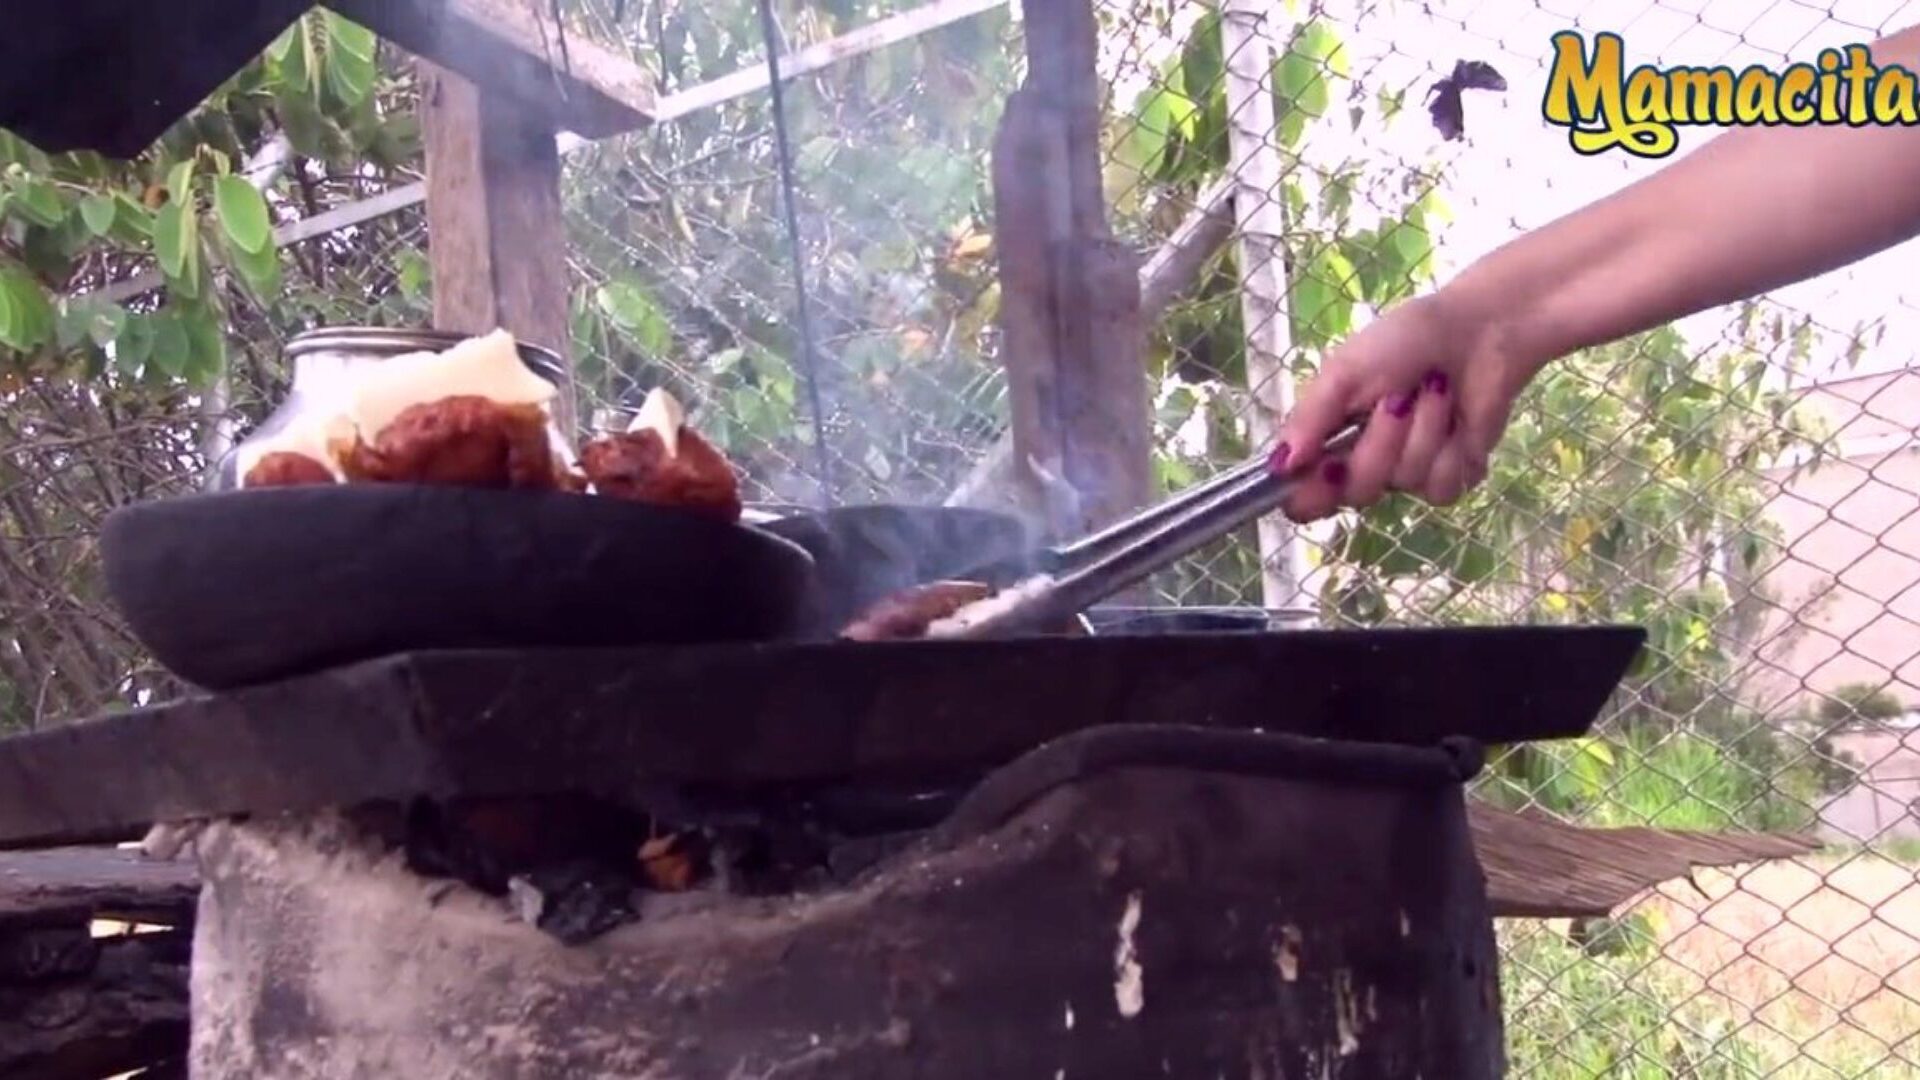 ماماسيتاز - بائع اللحوم الكولومبي شديد السخونة يشتهي نوعًا مختلفًا من اللحوم